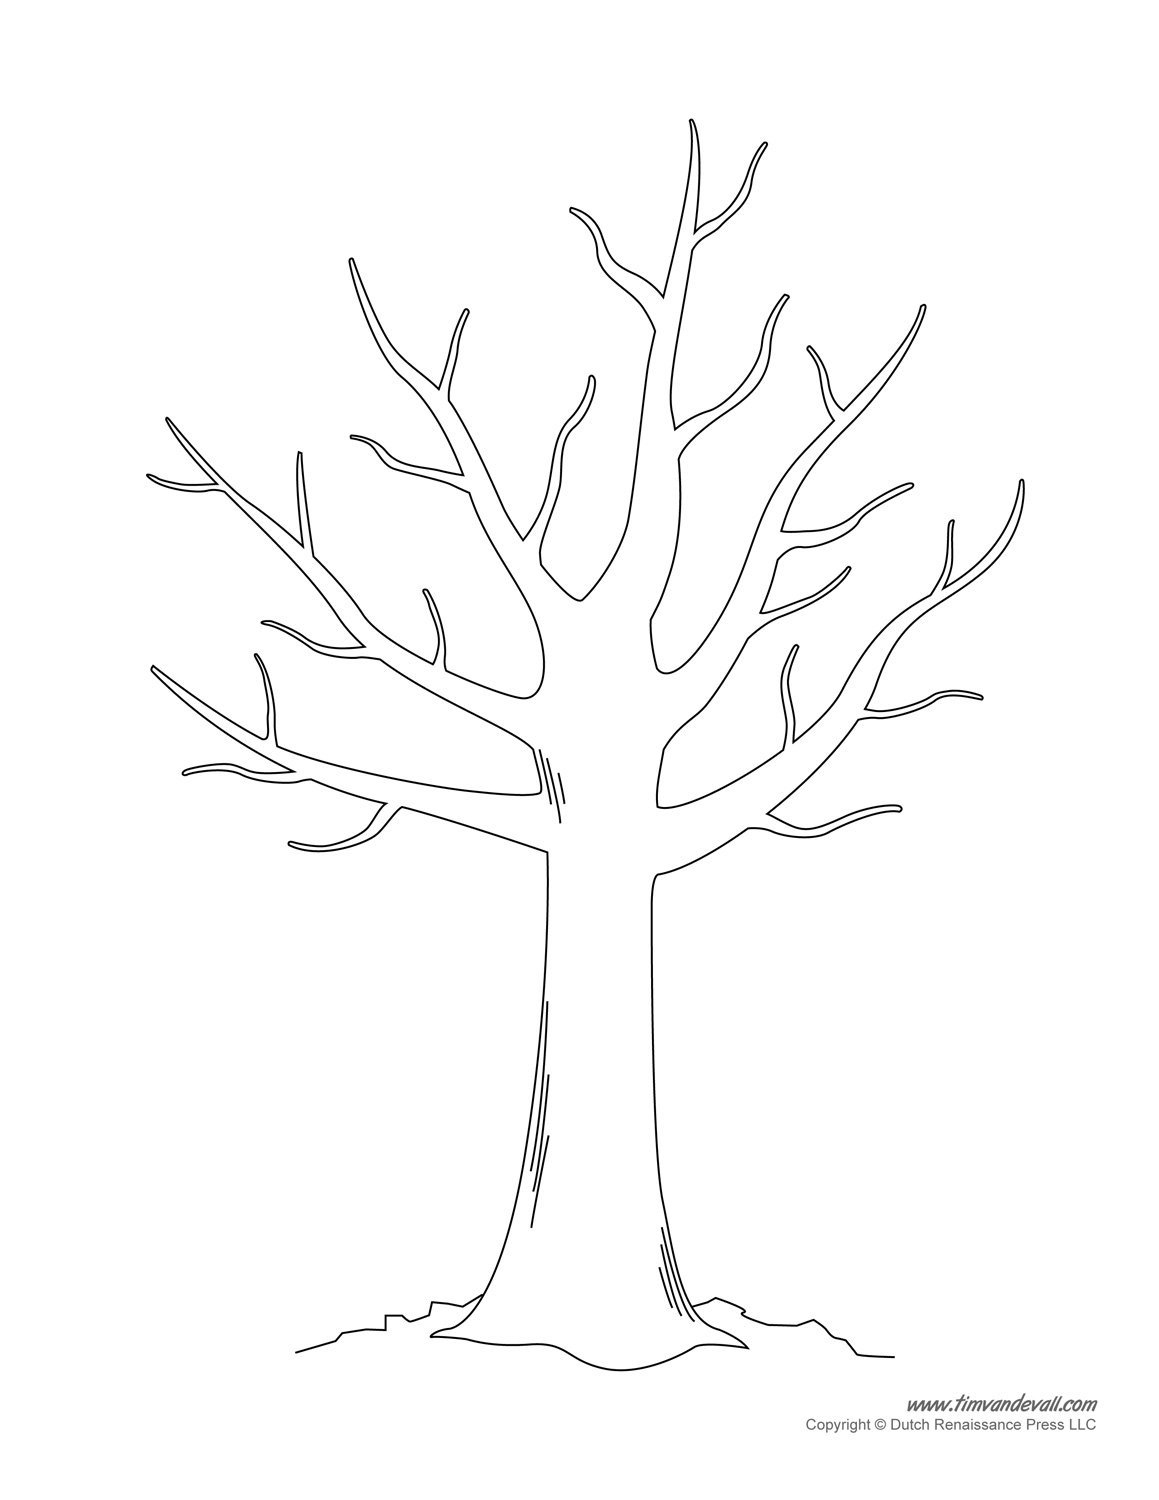 Бесплатные раскраски Листья деревьев. Распечатать раскраски бесплатно и скачать раскраски онлайн.